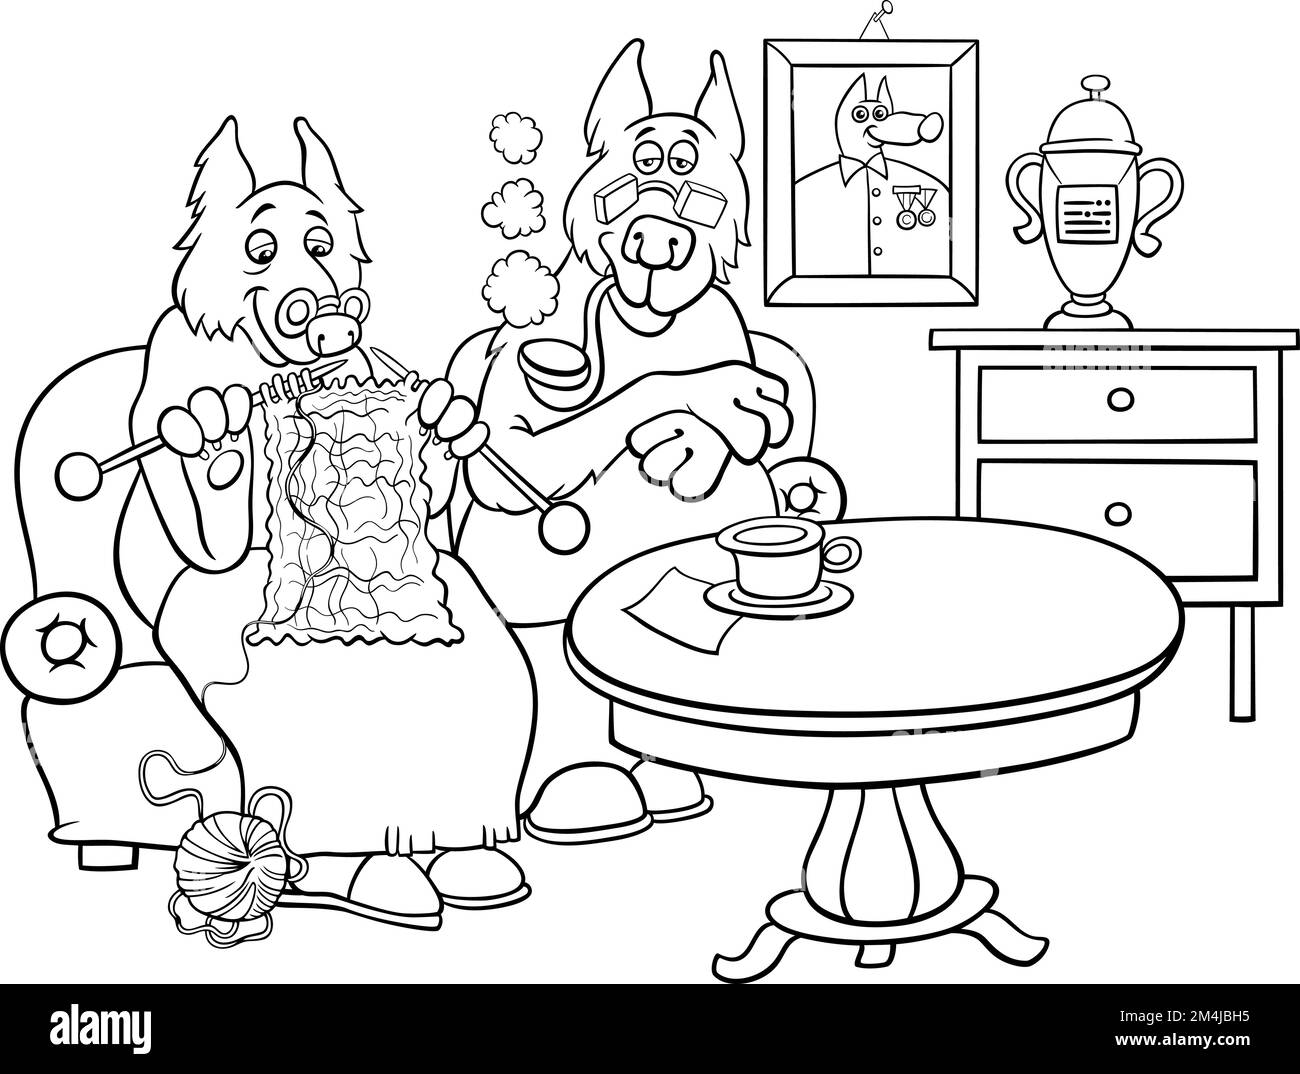 Dessin animé noir et blanc illustration de drôle de personnages de chien senior couple à la page de coloriage d'accueil Illustration de Vecteur